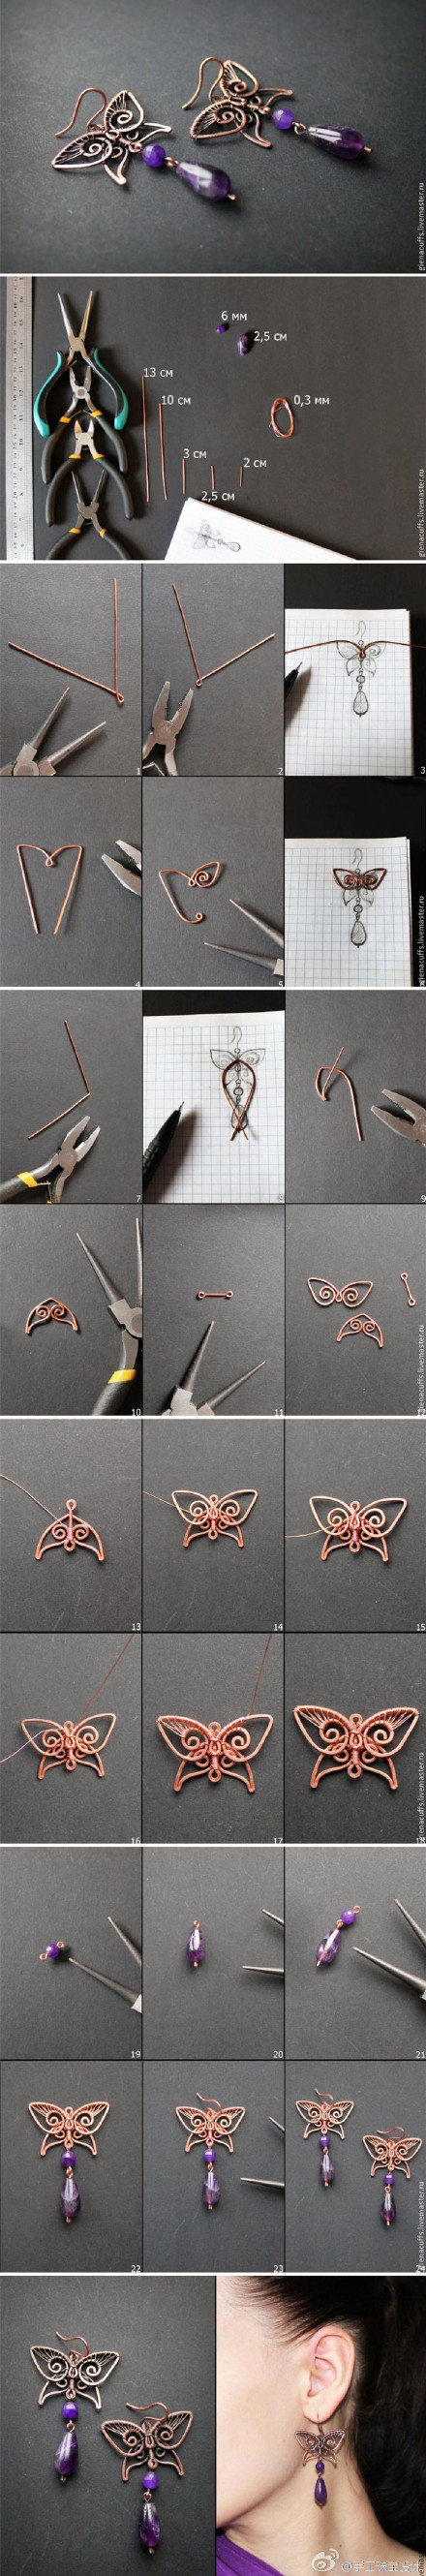 蝴蝶饰品。最后一个DIY教程大家可以试一下~#手工珠宝设计# #手作之美#